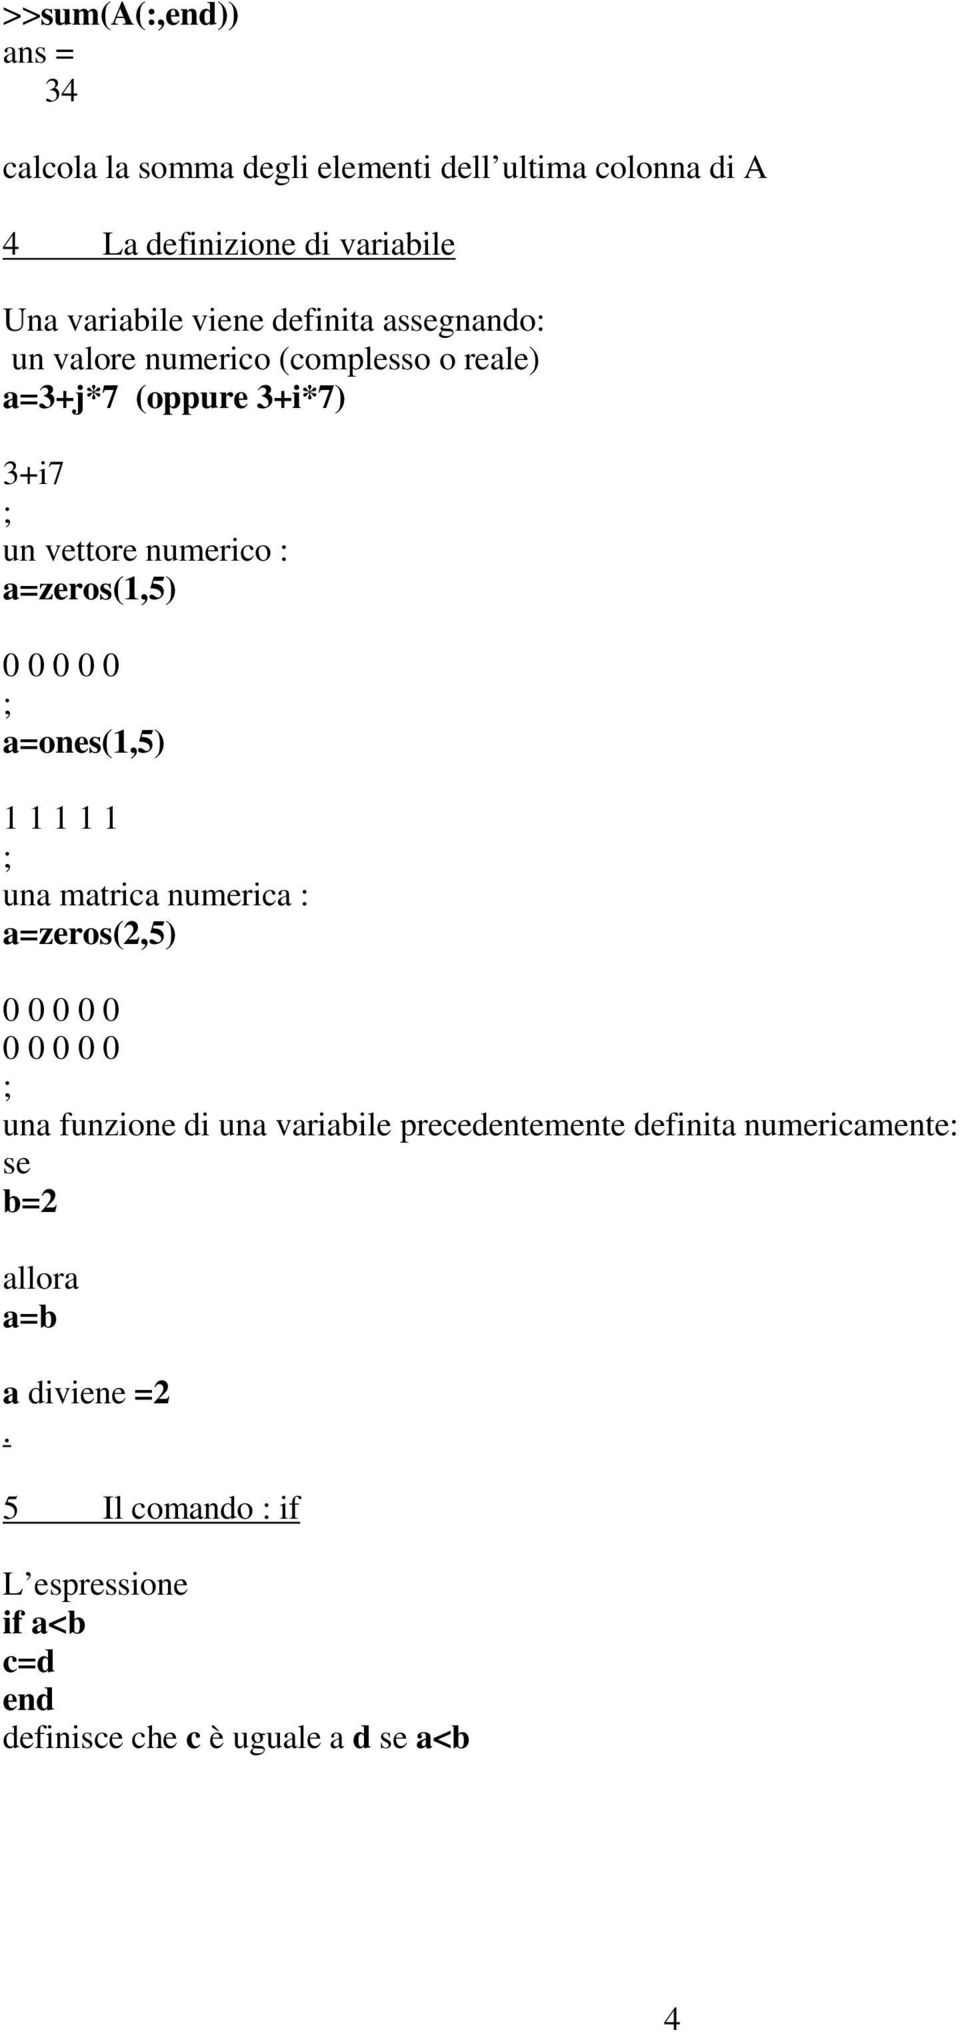 ; a=ones(1,5) 1 1 1 1 1 ; una matrica numerica : a=zeros(2,5) 0 0 0 0 0 0 0 0 0 0 ; una funzione di una variabile precedentemente